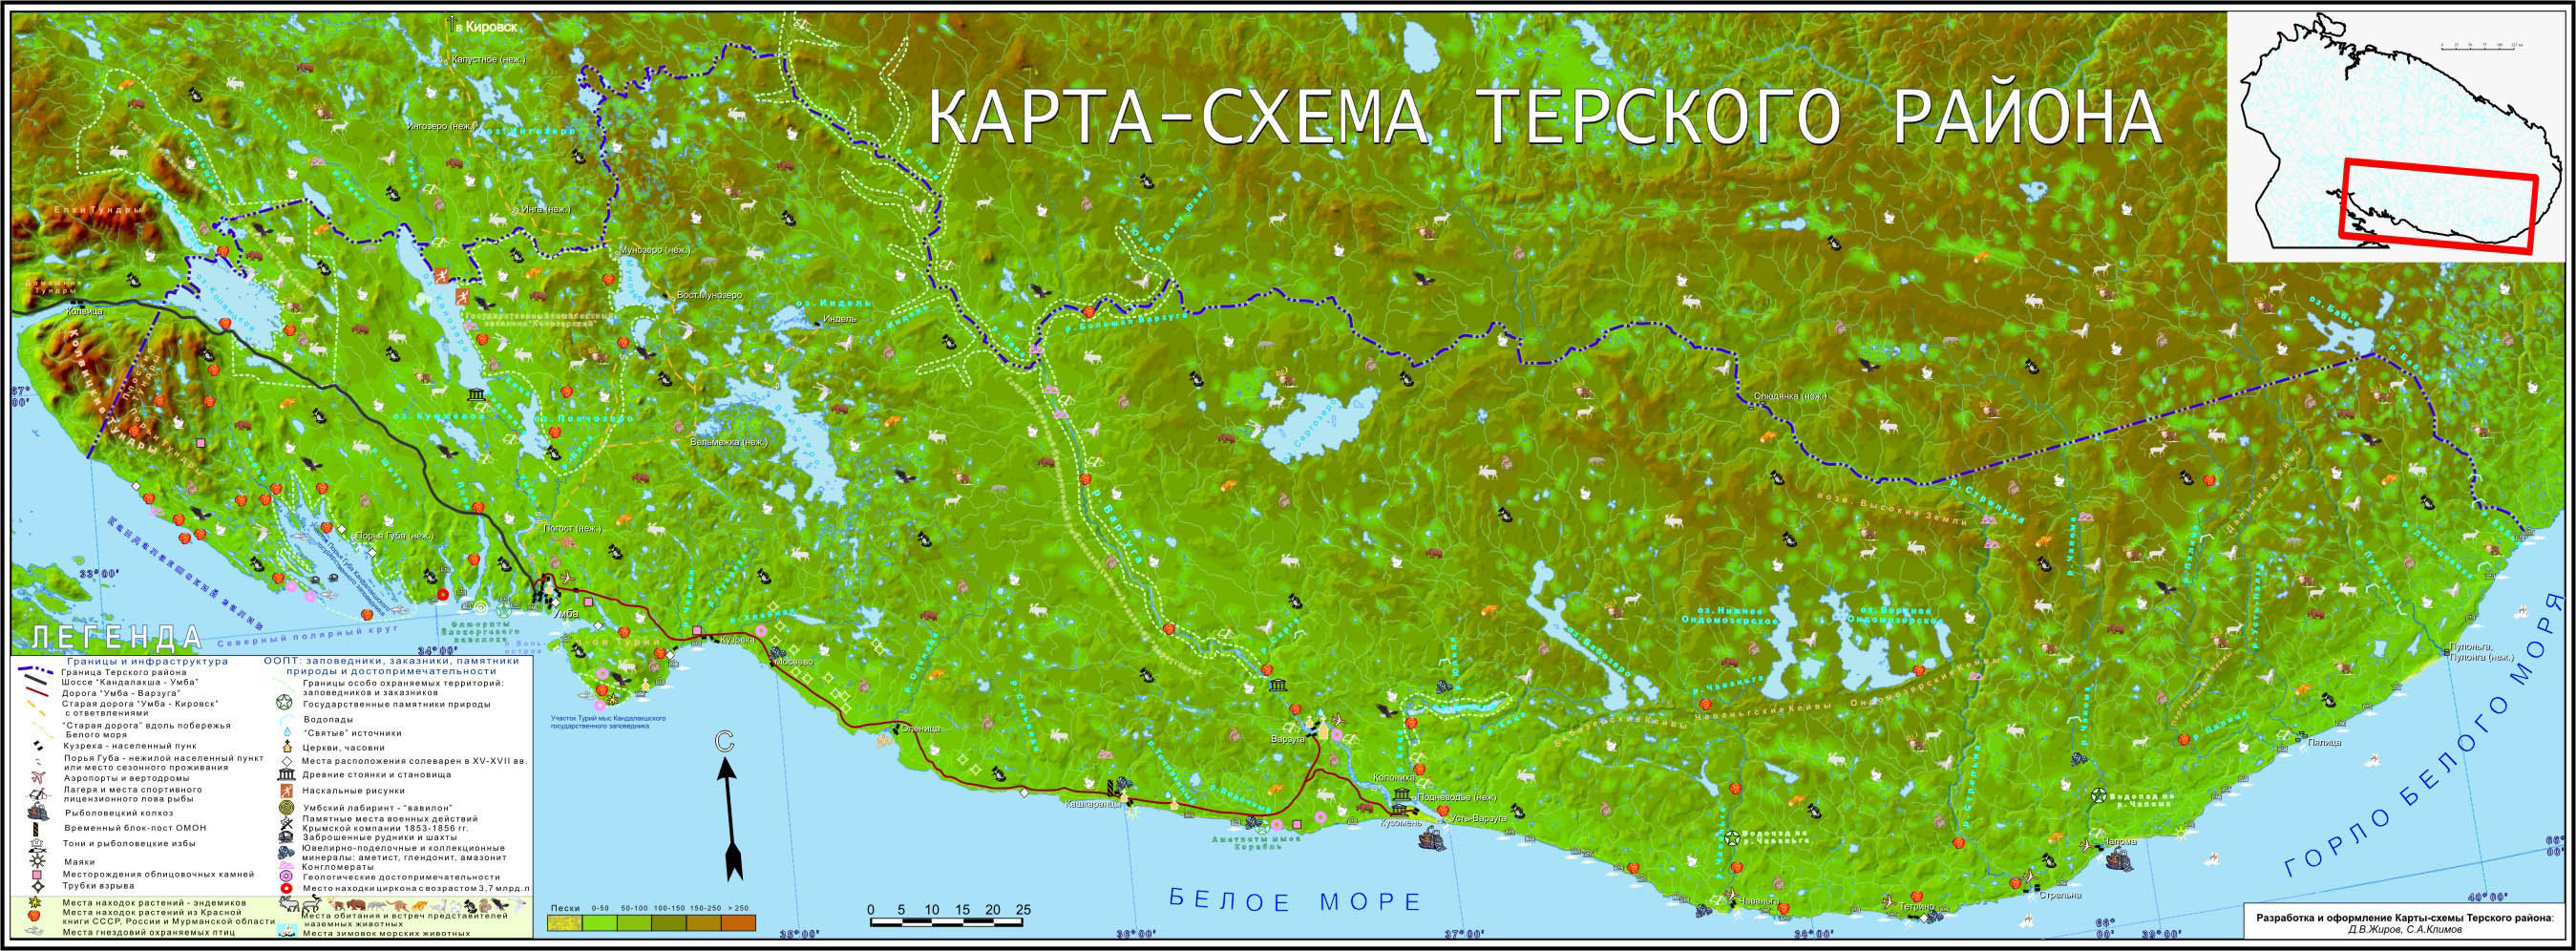 Карта схема Терского района.